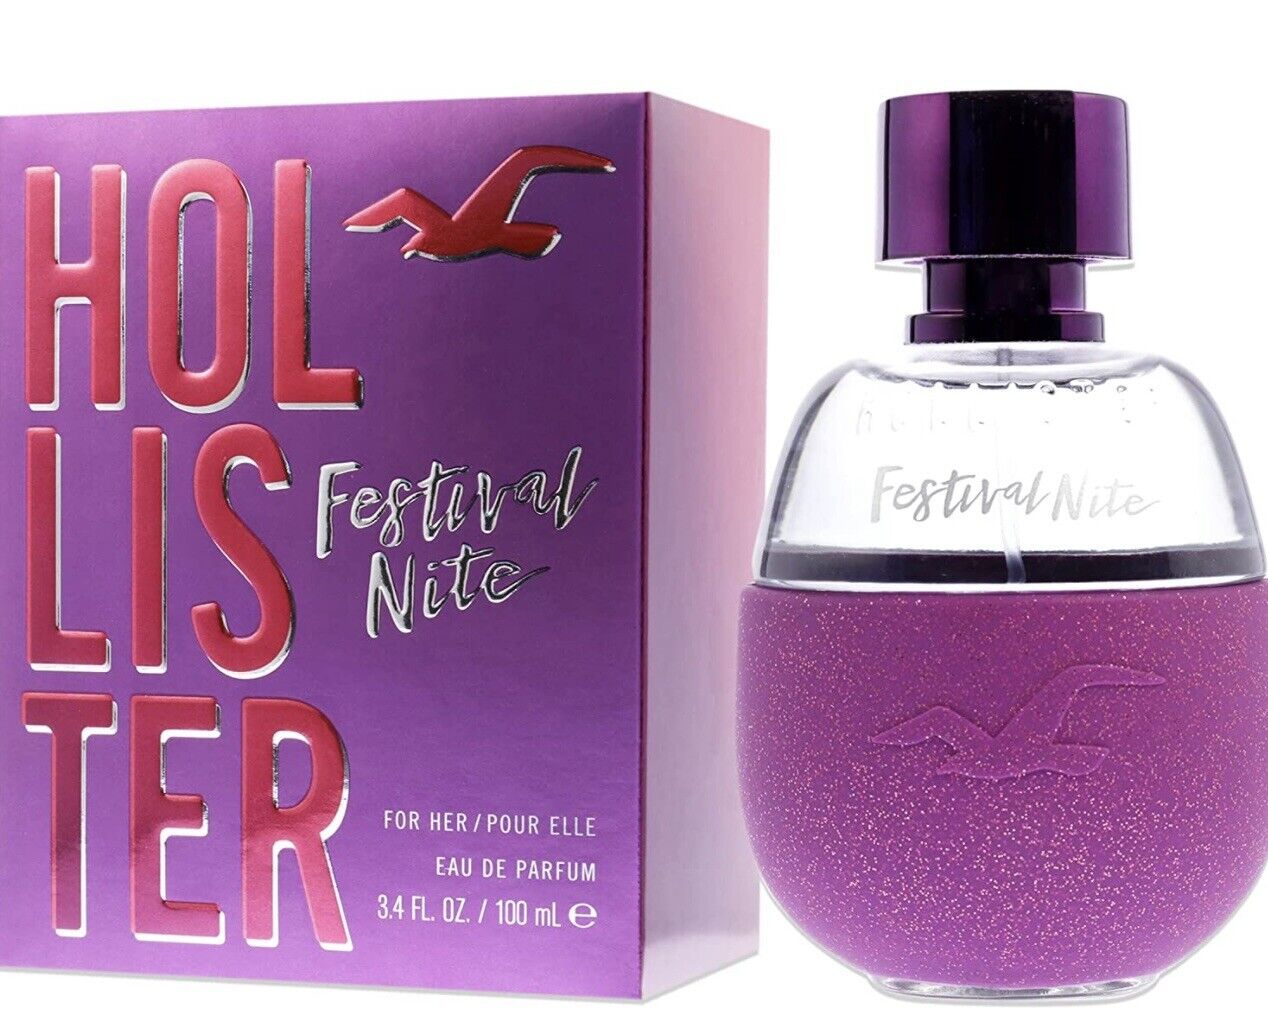 Hollister Festival Nite Eau De Parfum for Women EDP 100ml at Ratans Online Shop - Perfumes Wholesale and Retailer Fragrance